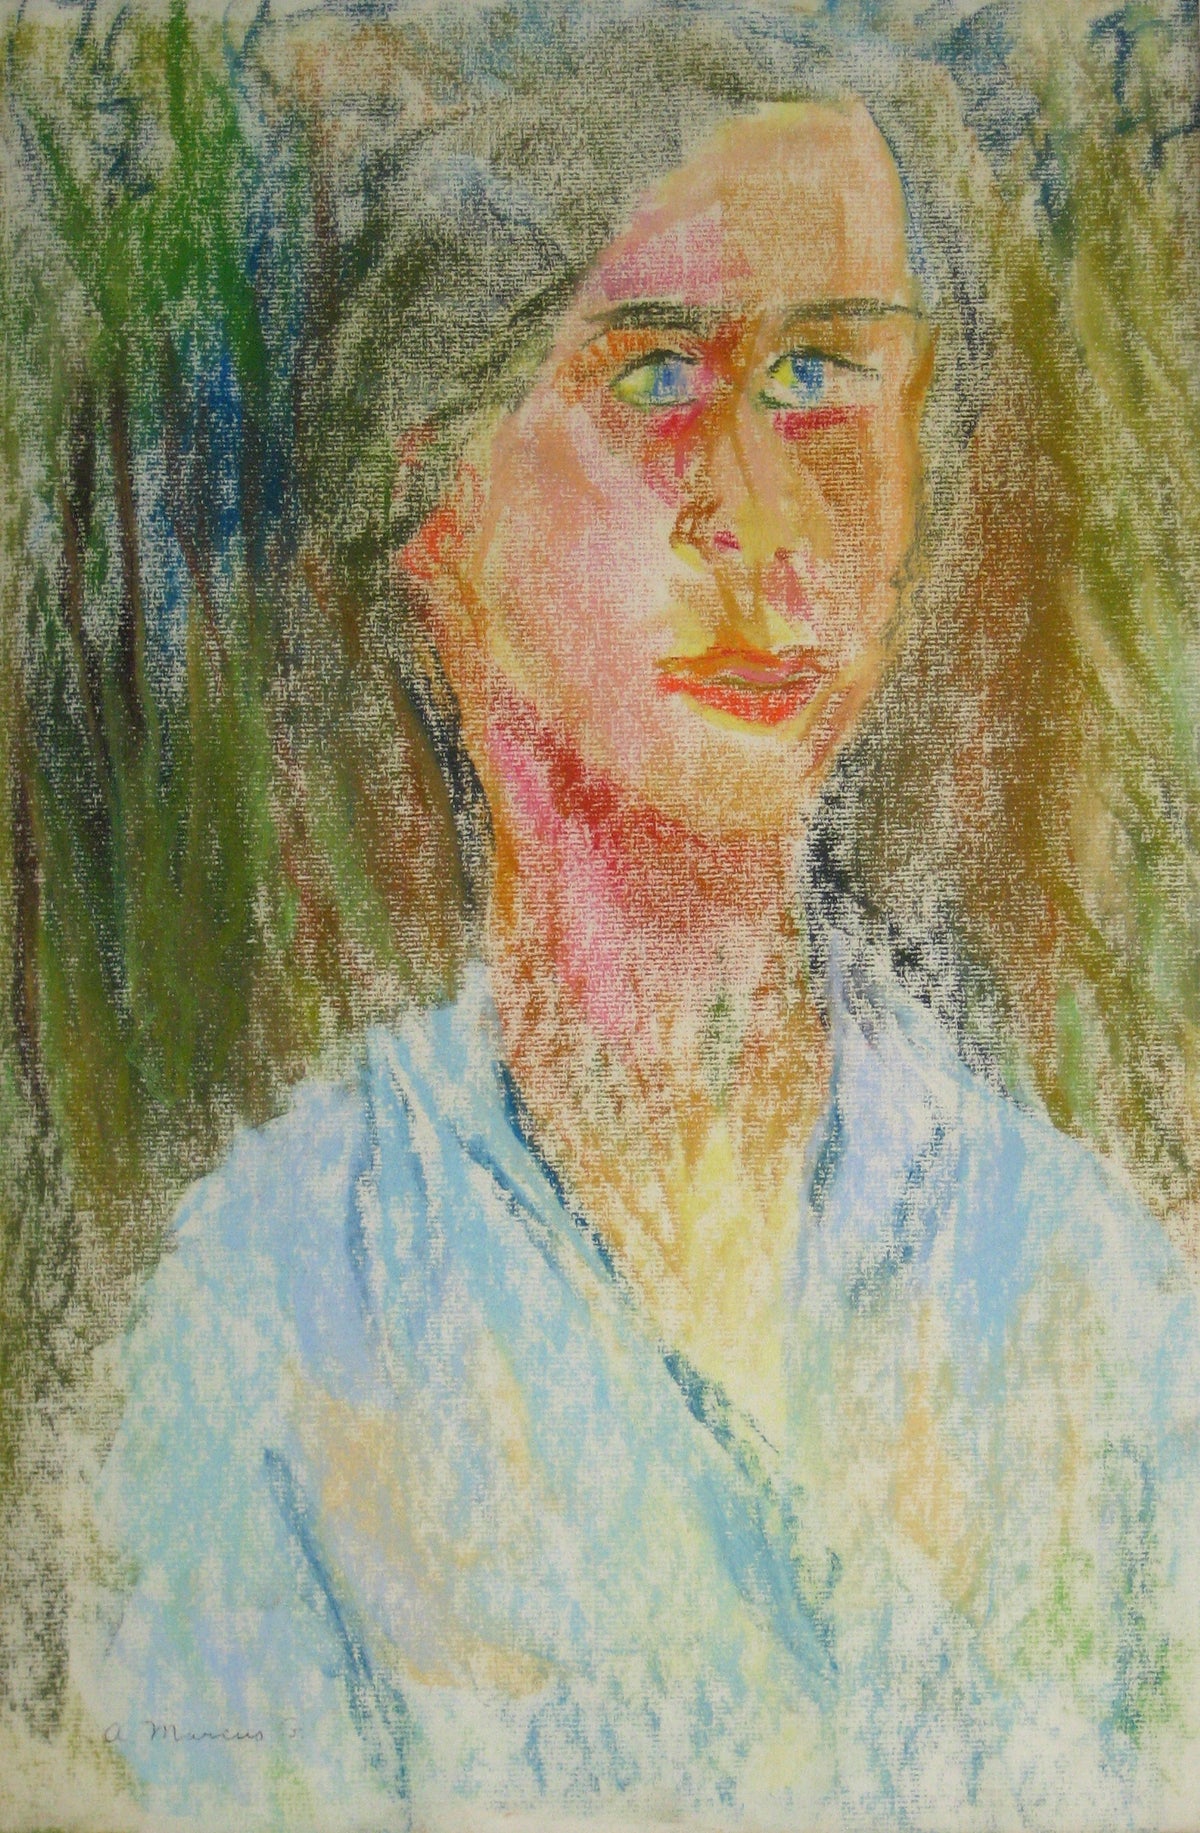 &lt;i&gt;Lady in the Forest&lt;/i&gt;&lt;br&gt;1950-60s Pastel&lt;br&gt;&lt;br&gt;#15282